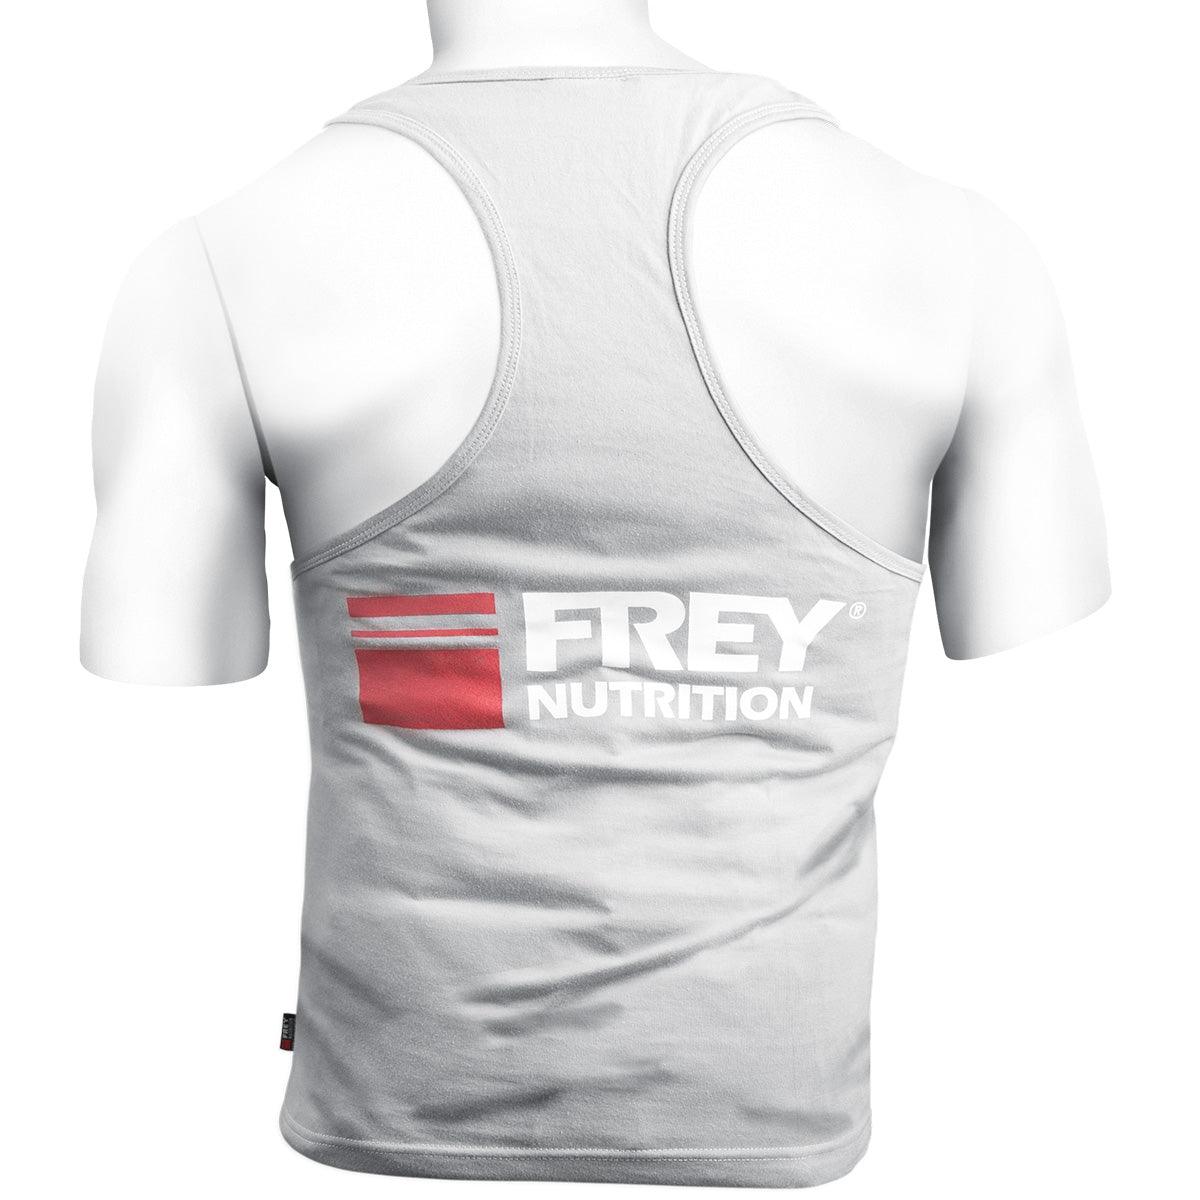 FREY STRINGER - Demo-Frey-Nutrition